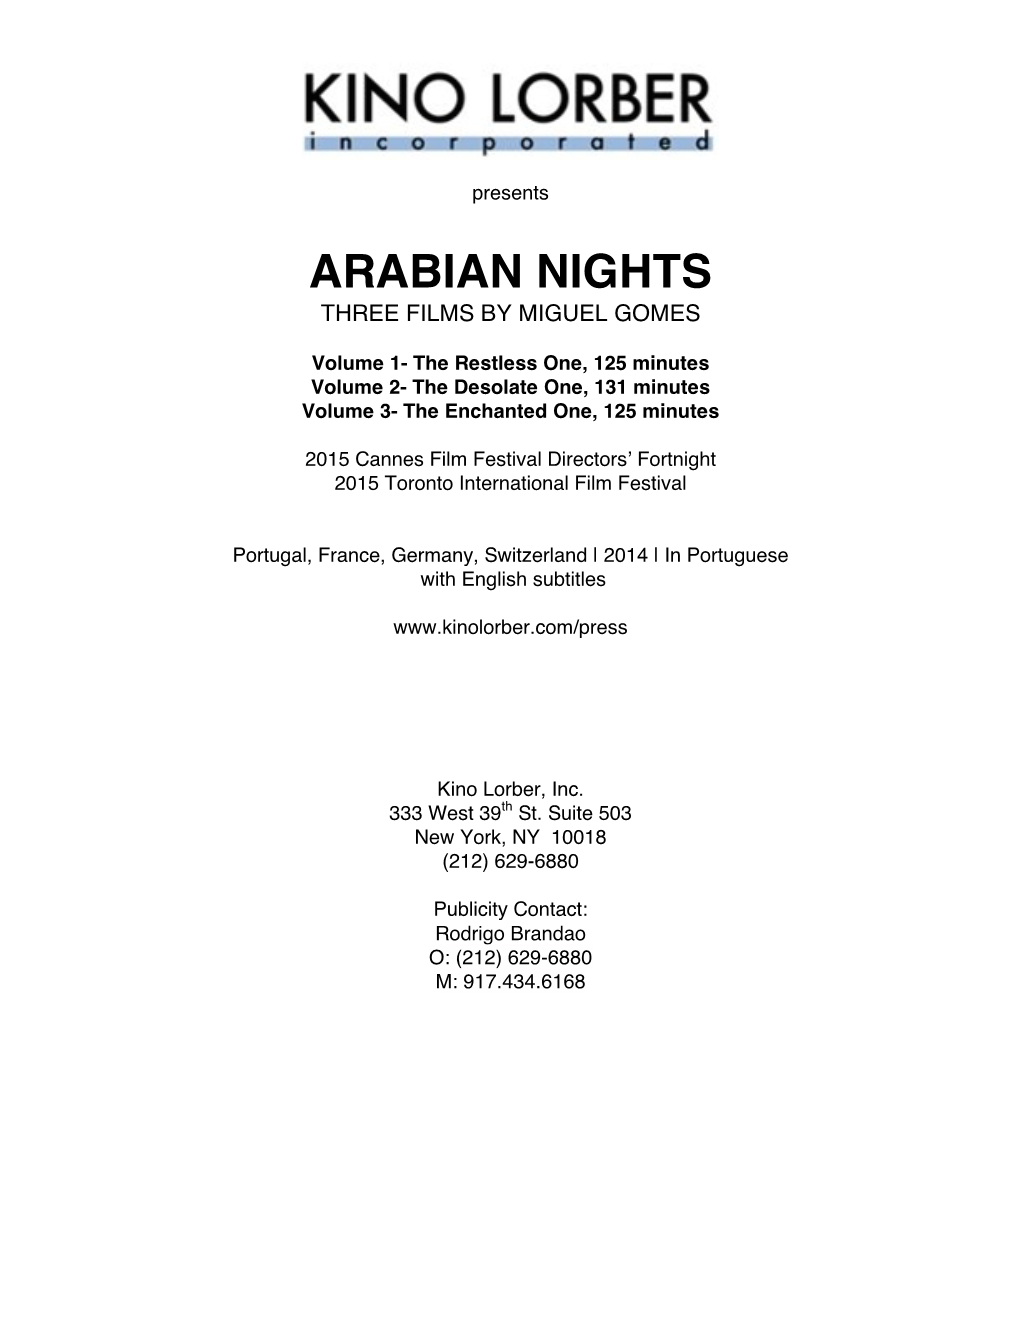 Arabian Nights Three Films by Miguel Gomes